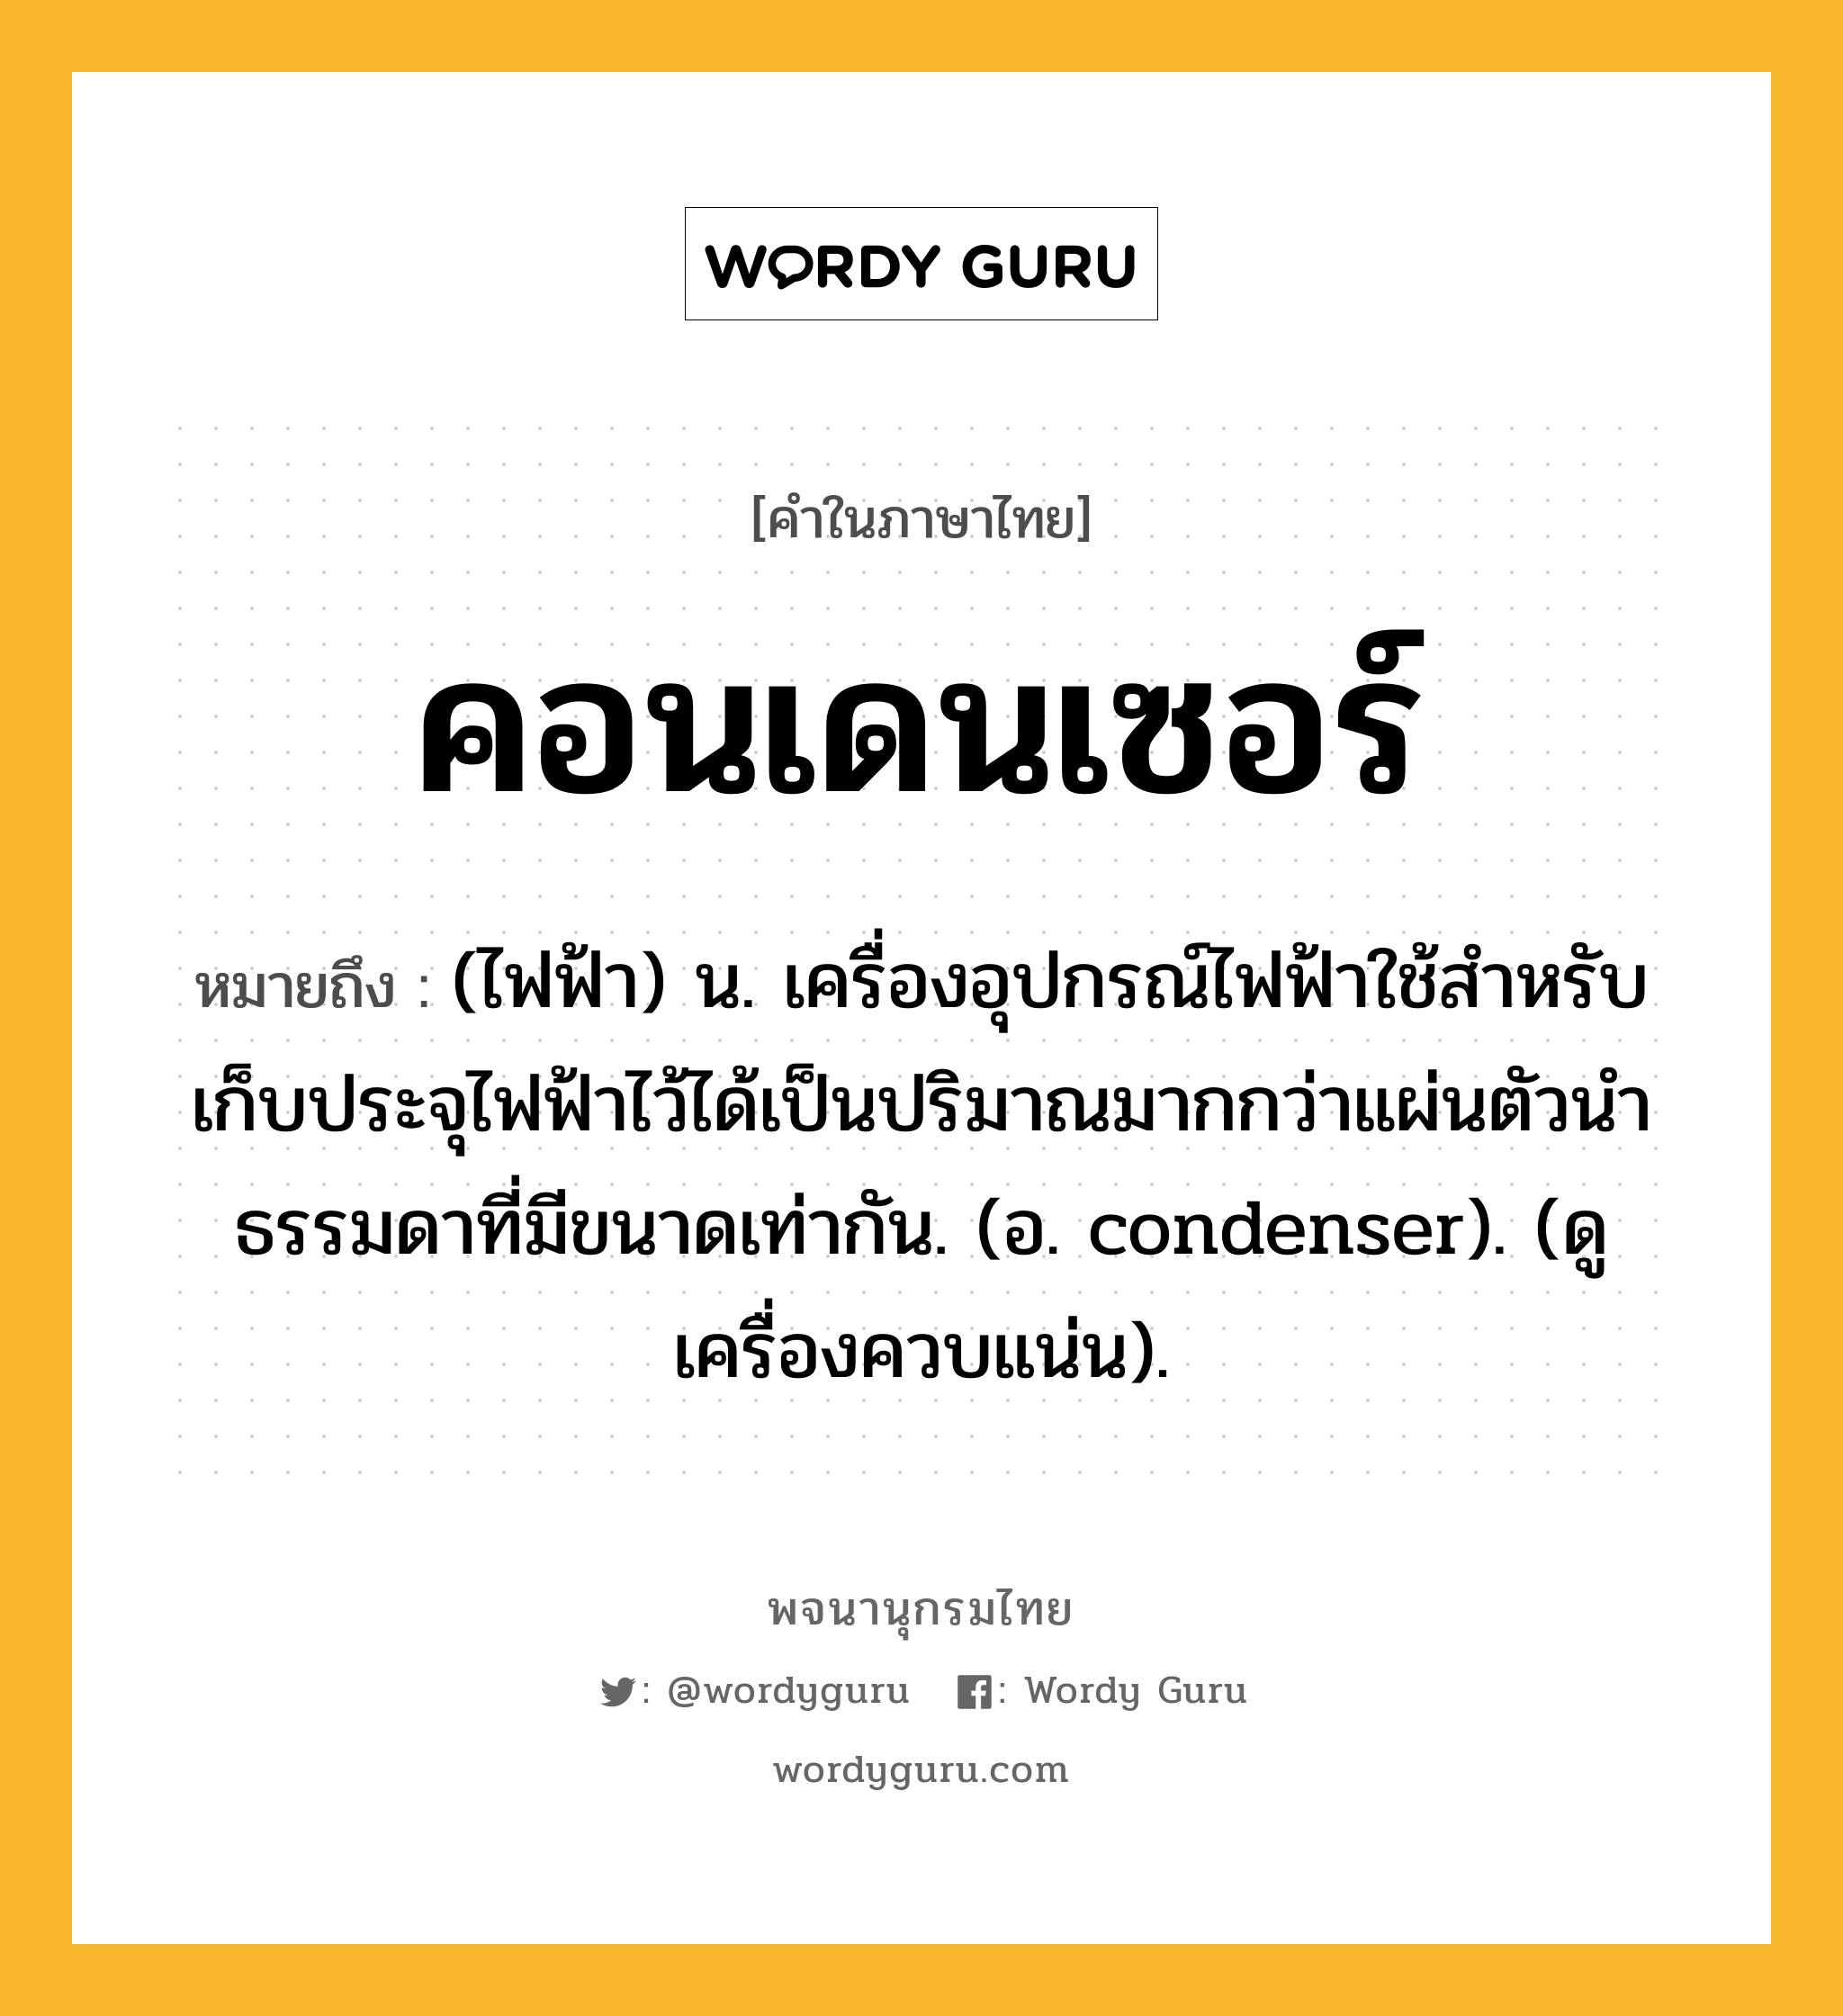 คอนเดนเซอร์ หมายถึงอะไร?, คำในภาษาไทย คอนเดนเซอร์ หมายถึง (ไฟฟ้า) น. เครื่องอุปกรณ์ไฟฟ้าใช้สําหรับเก็บประจุไฟฟ้าไว้ได้เป็นปริมาณมากกว่าแผ่นตัวนําธรรมดาที่มีขนาดเท่ากัน. (อ. condenser). (ดู เครื่องควบแน่น).